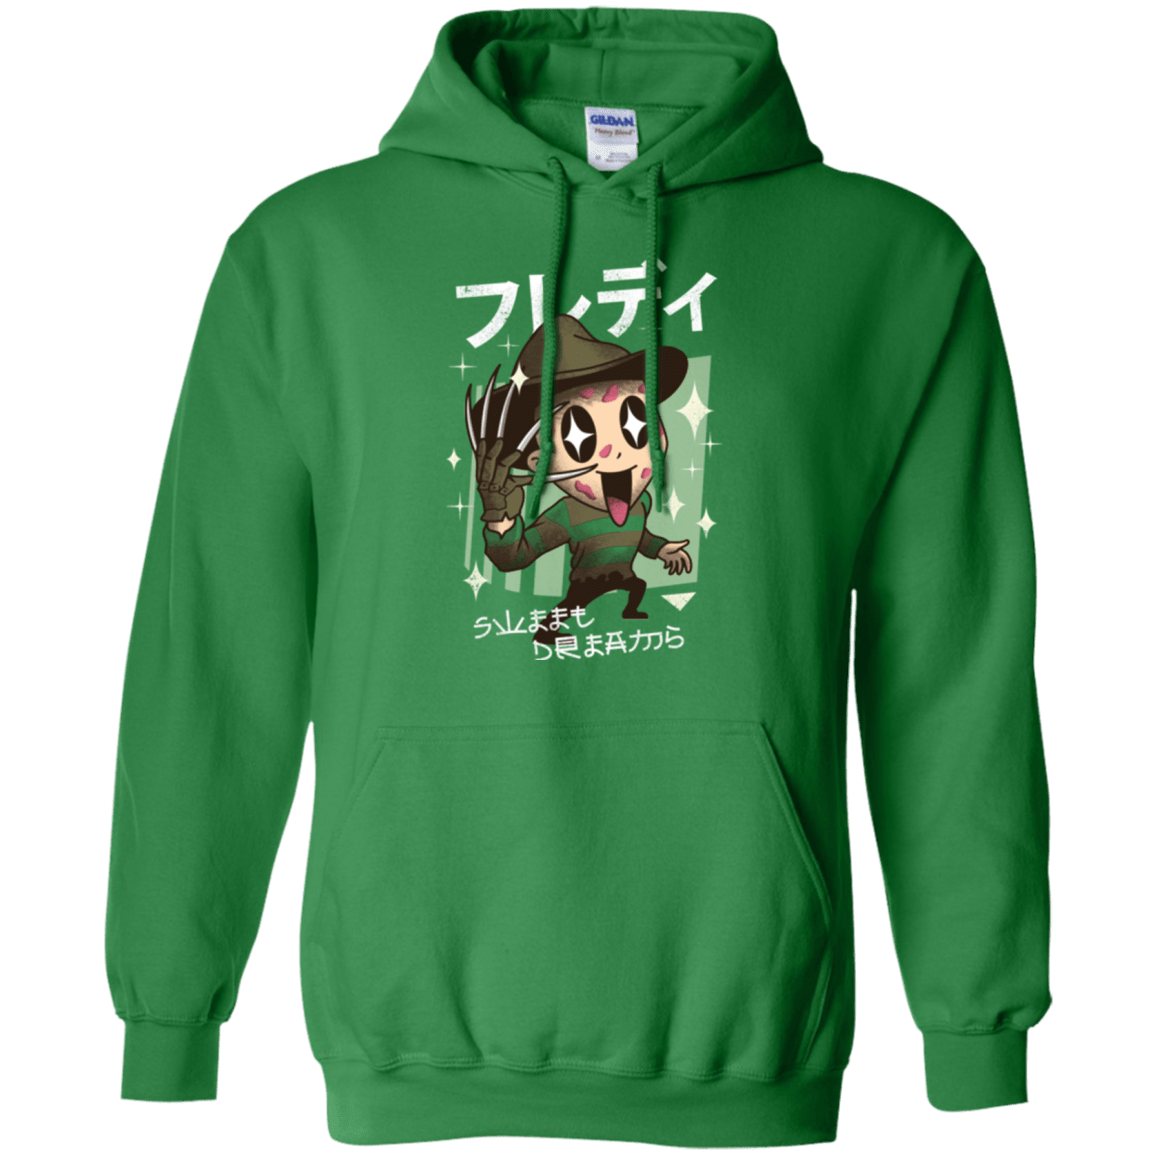 Sweatshirts Irish Green / Small Kawaii Dreams Pullover Hoodie